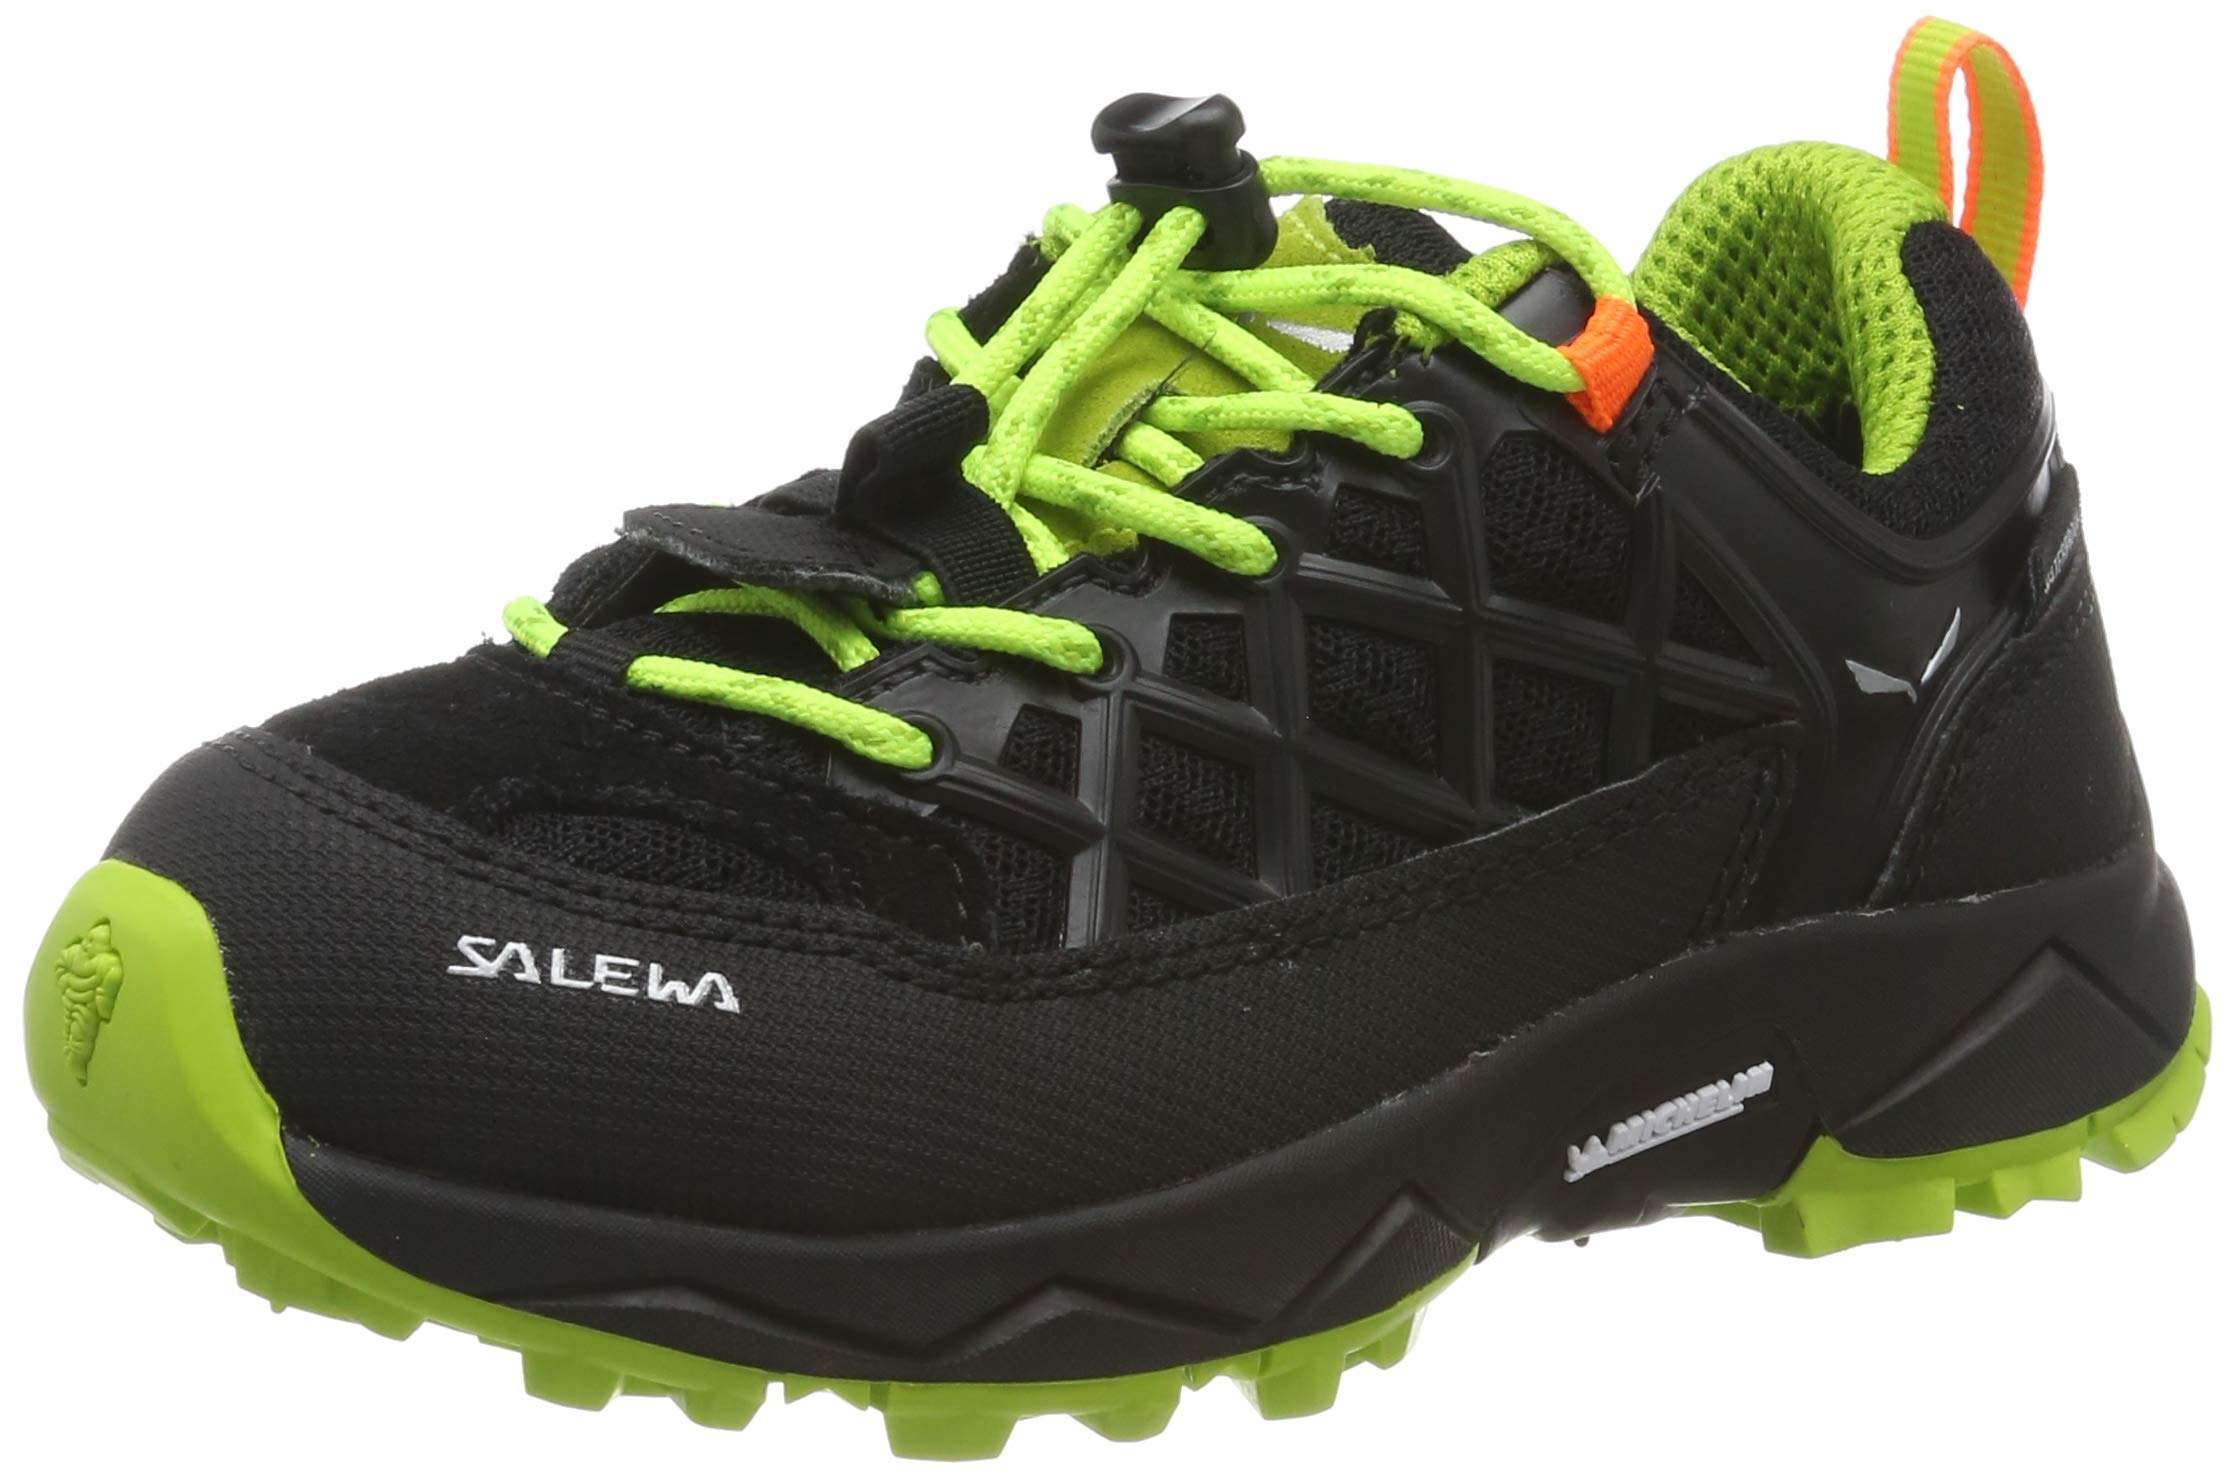 Salewa JR Wildfire Waterproof Zapatos de Senderismo, Black Out/Cactus, 30 EU